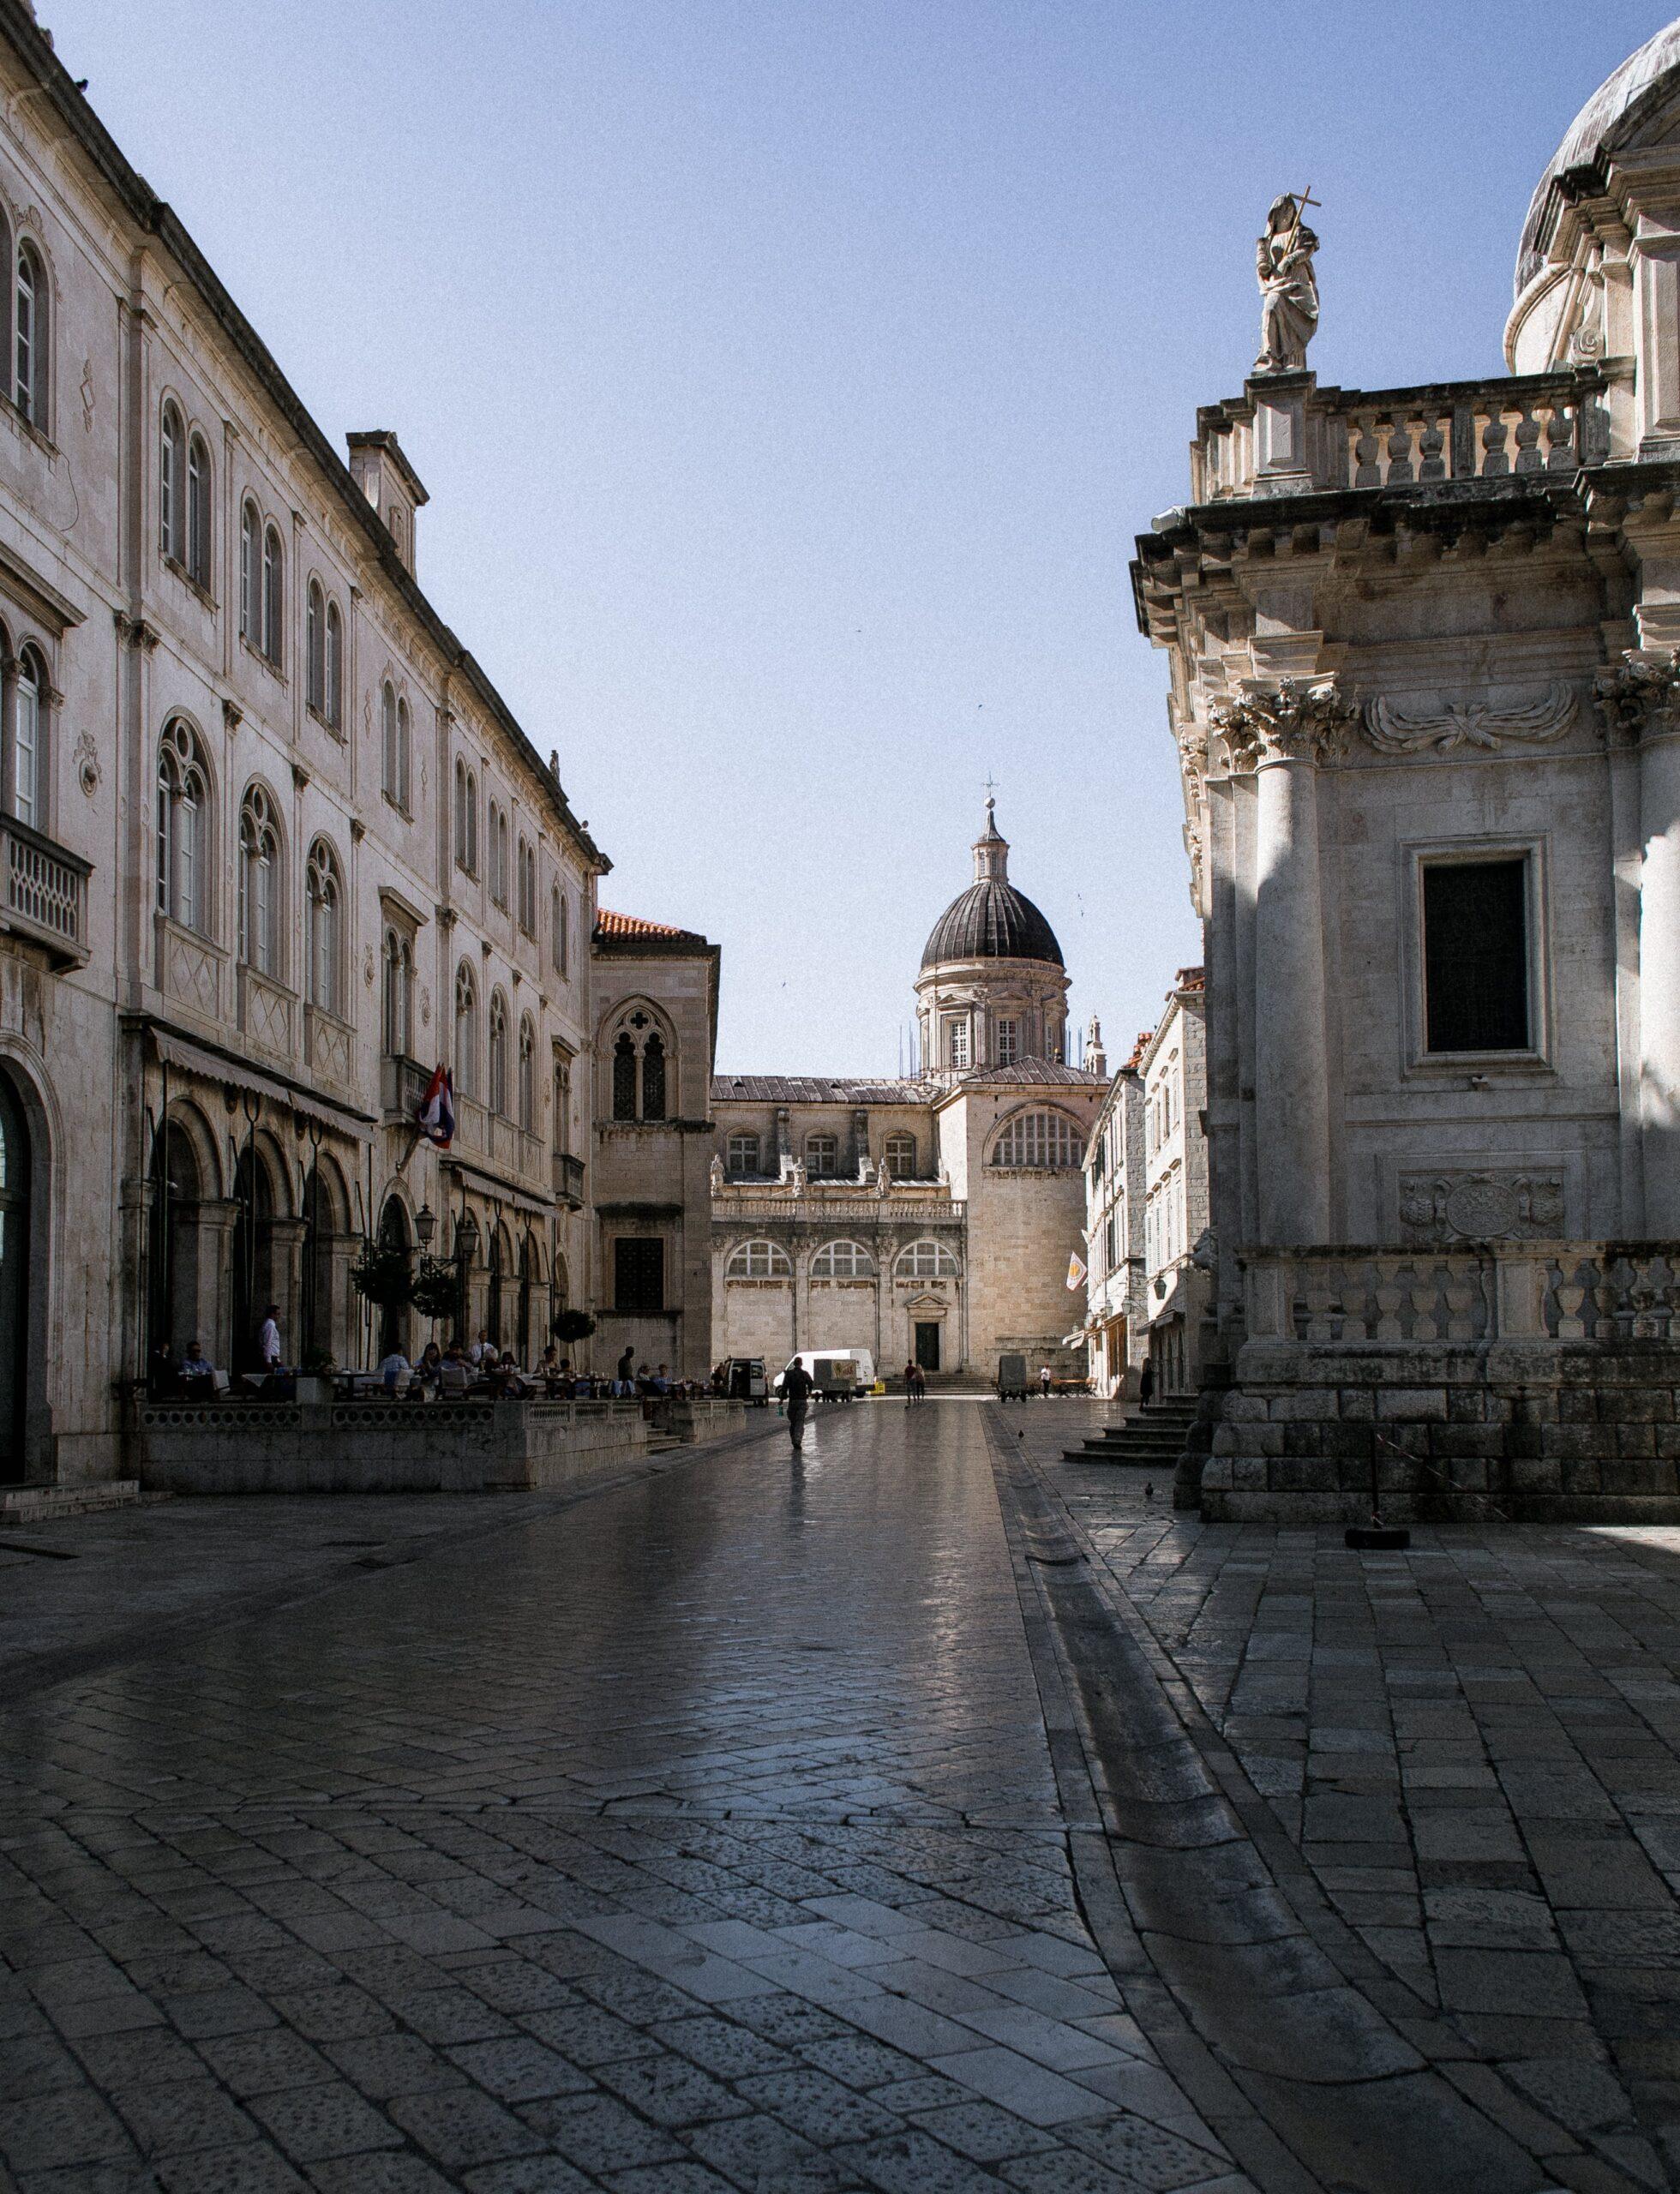 🏰 Cultural Heritage of Dubrovnik, Croatia 🇭🇷